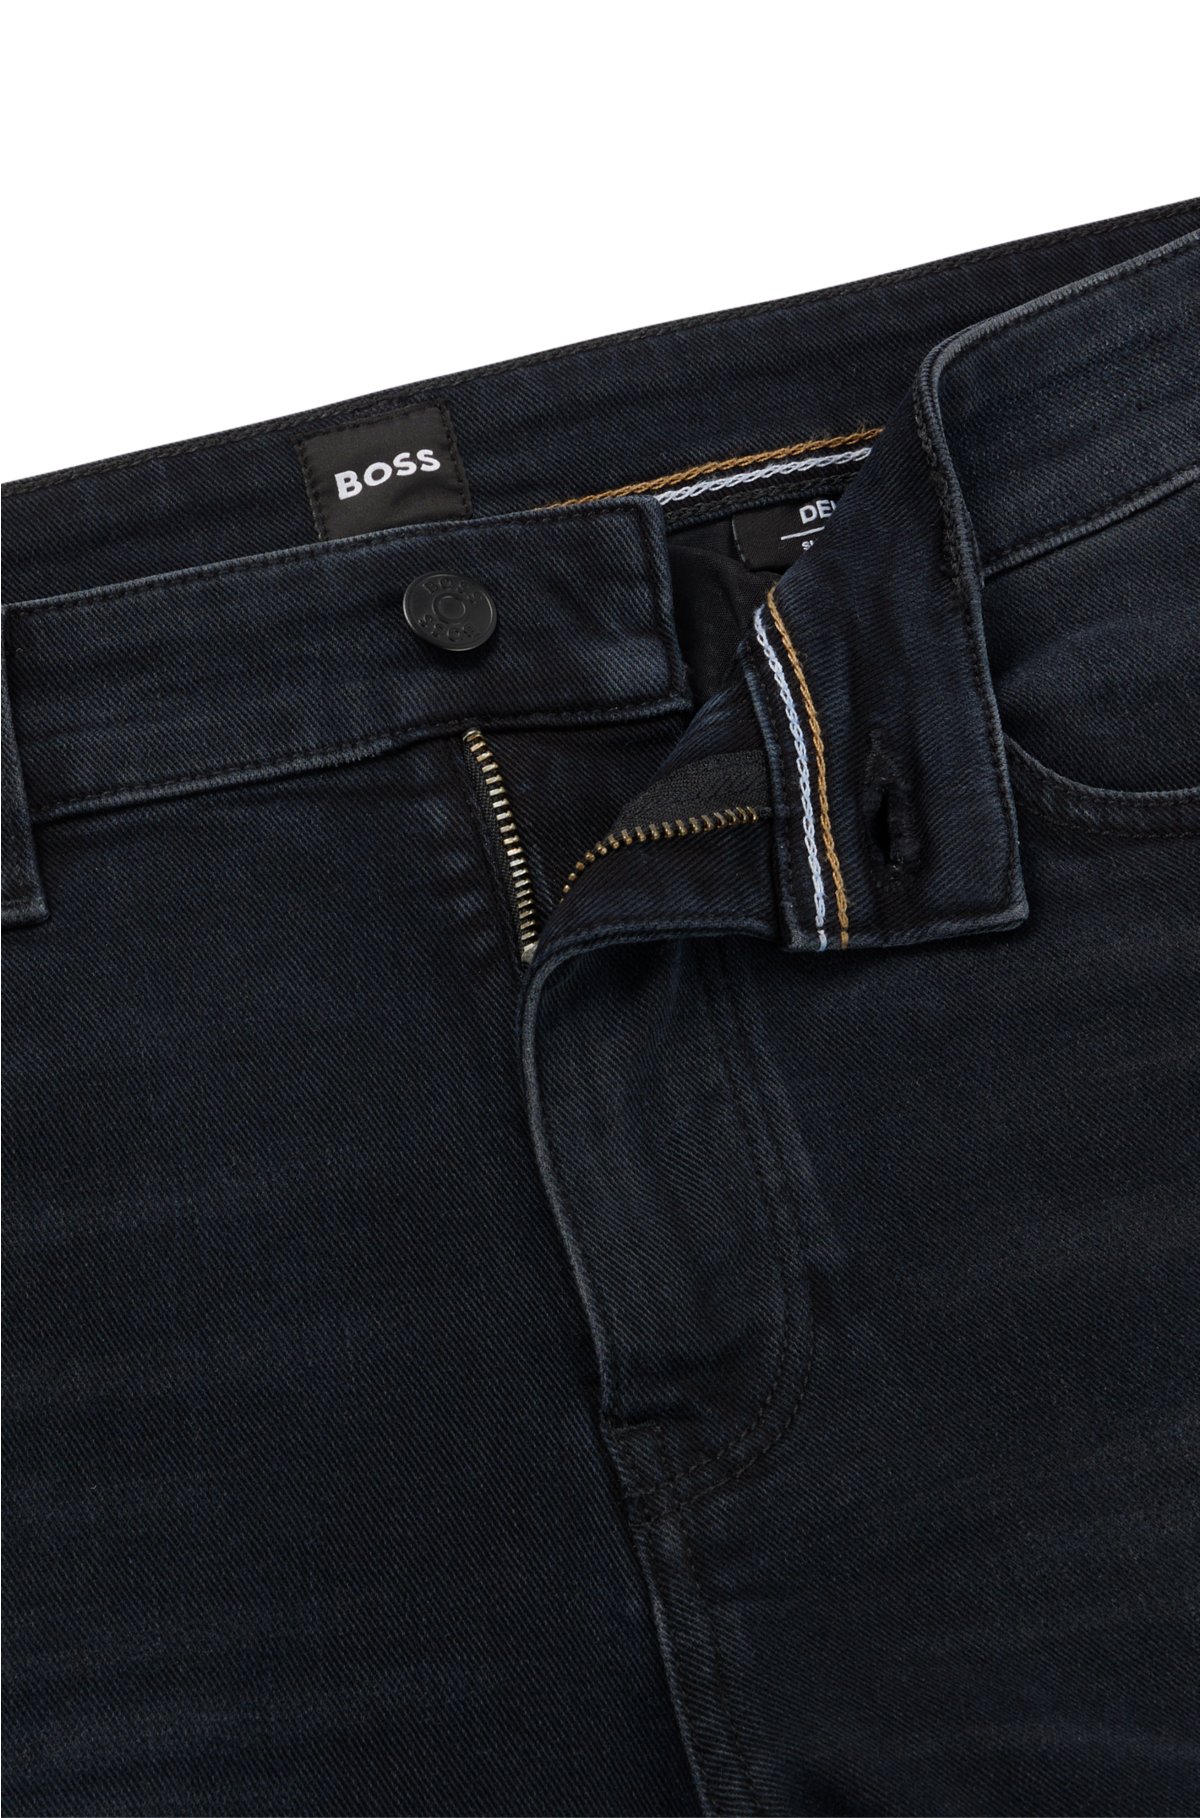 Opsplitsen masker Crack pot BOSS - Slim-fit jeans van superzacht marineblauw Italiaans denim